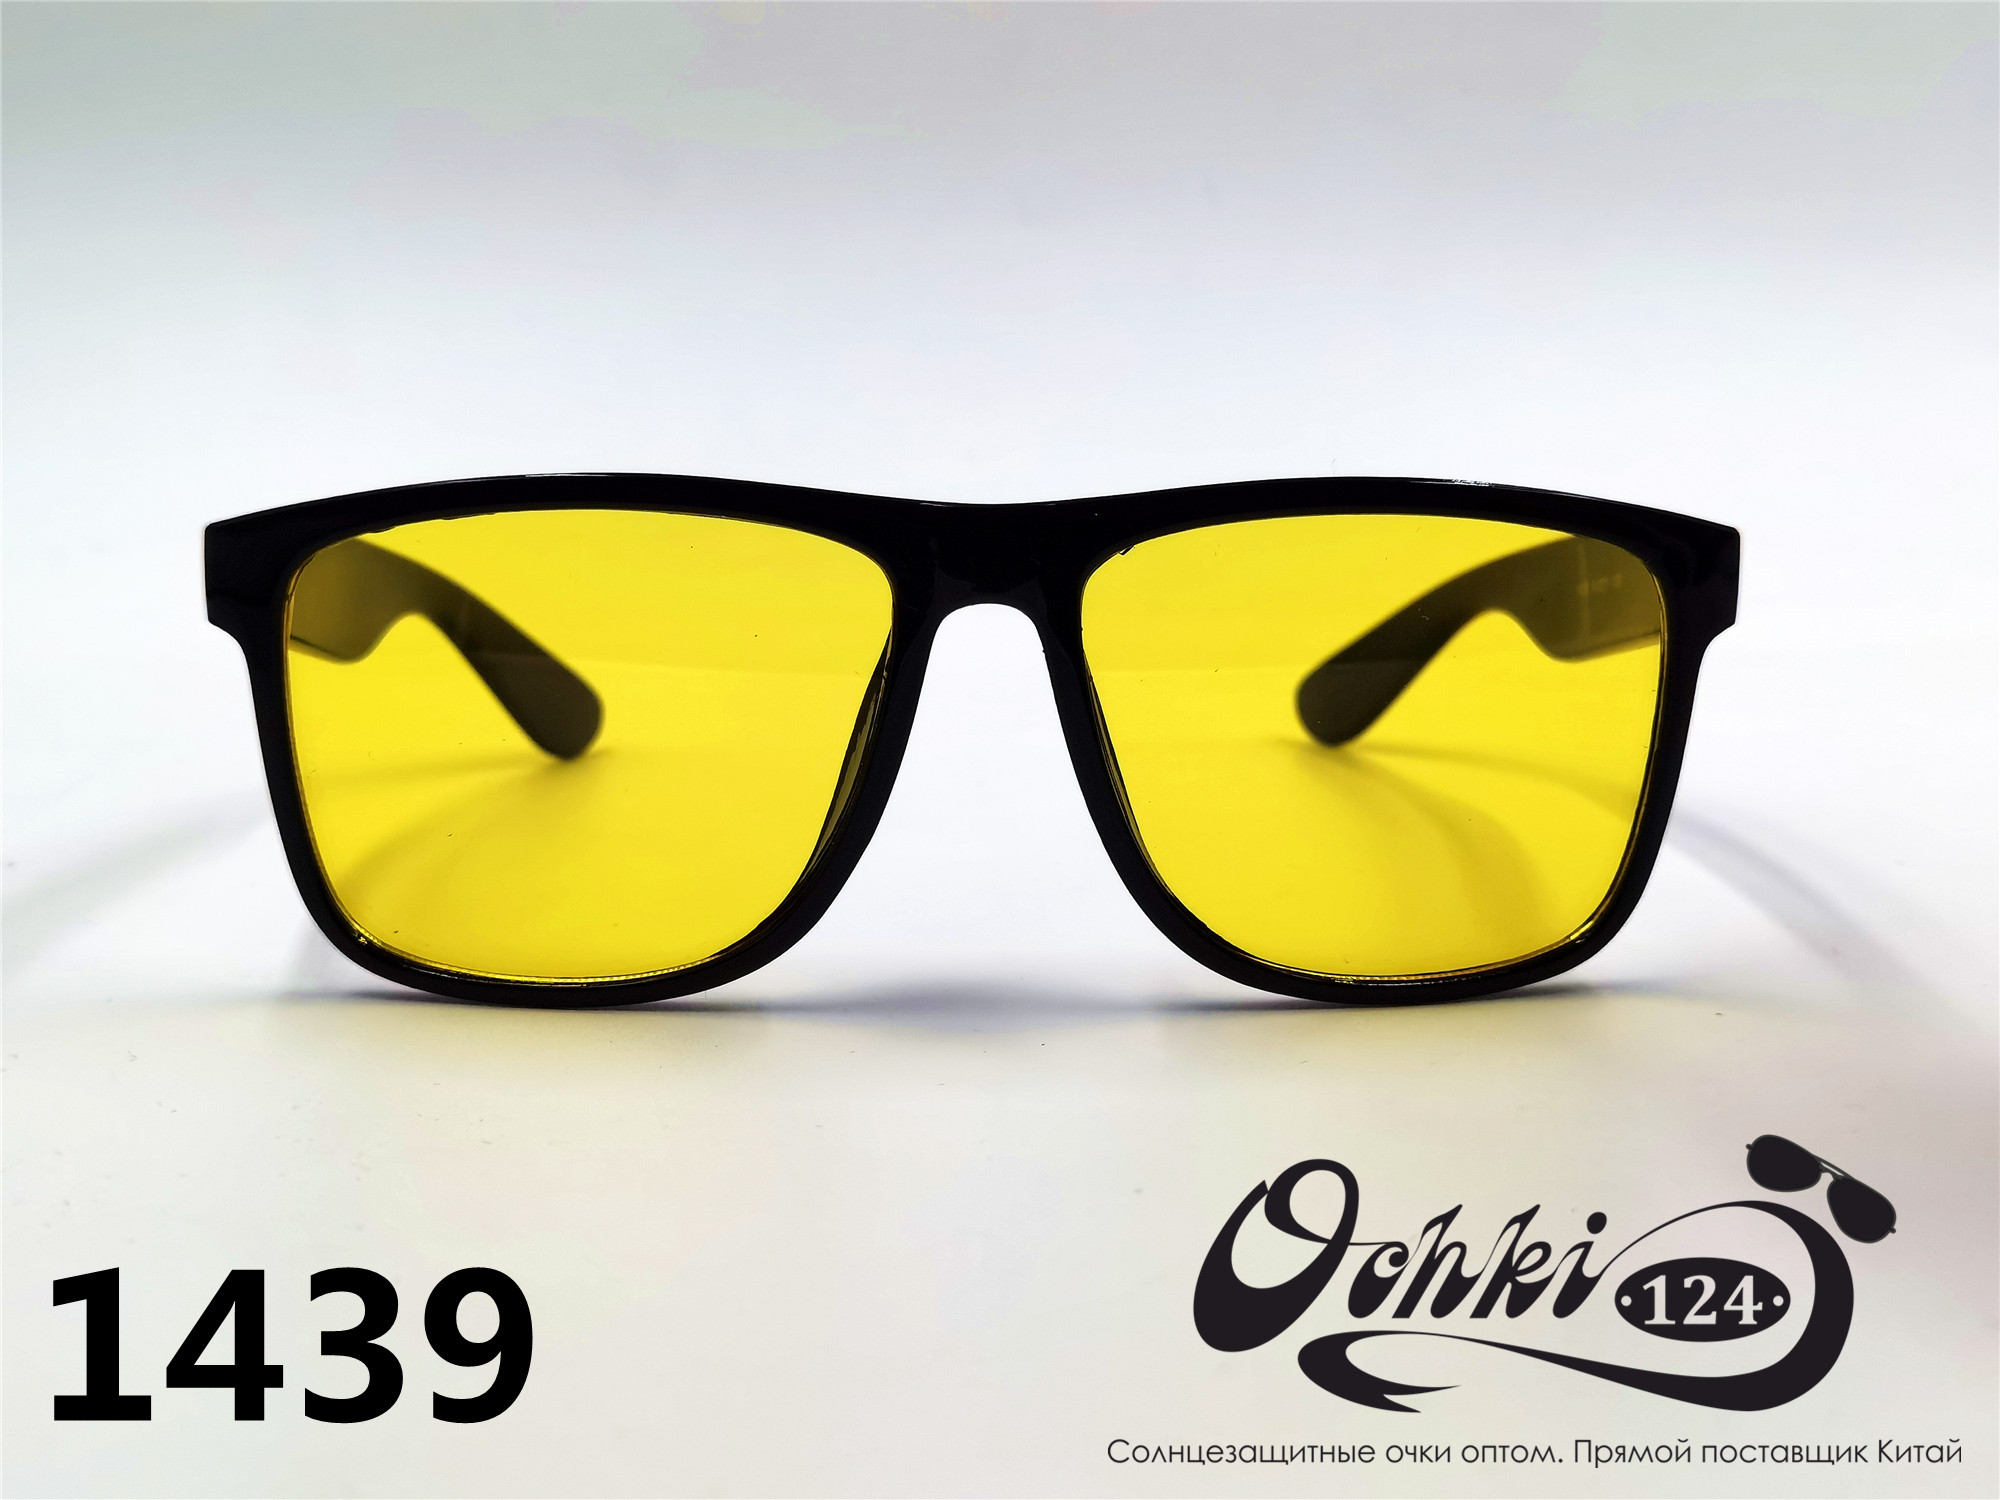  Солнцезащитные очки картинка 2022 Мужские Квадратные Materice 1439-8 